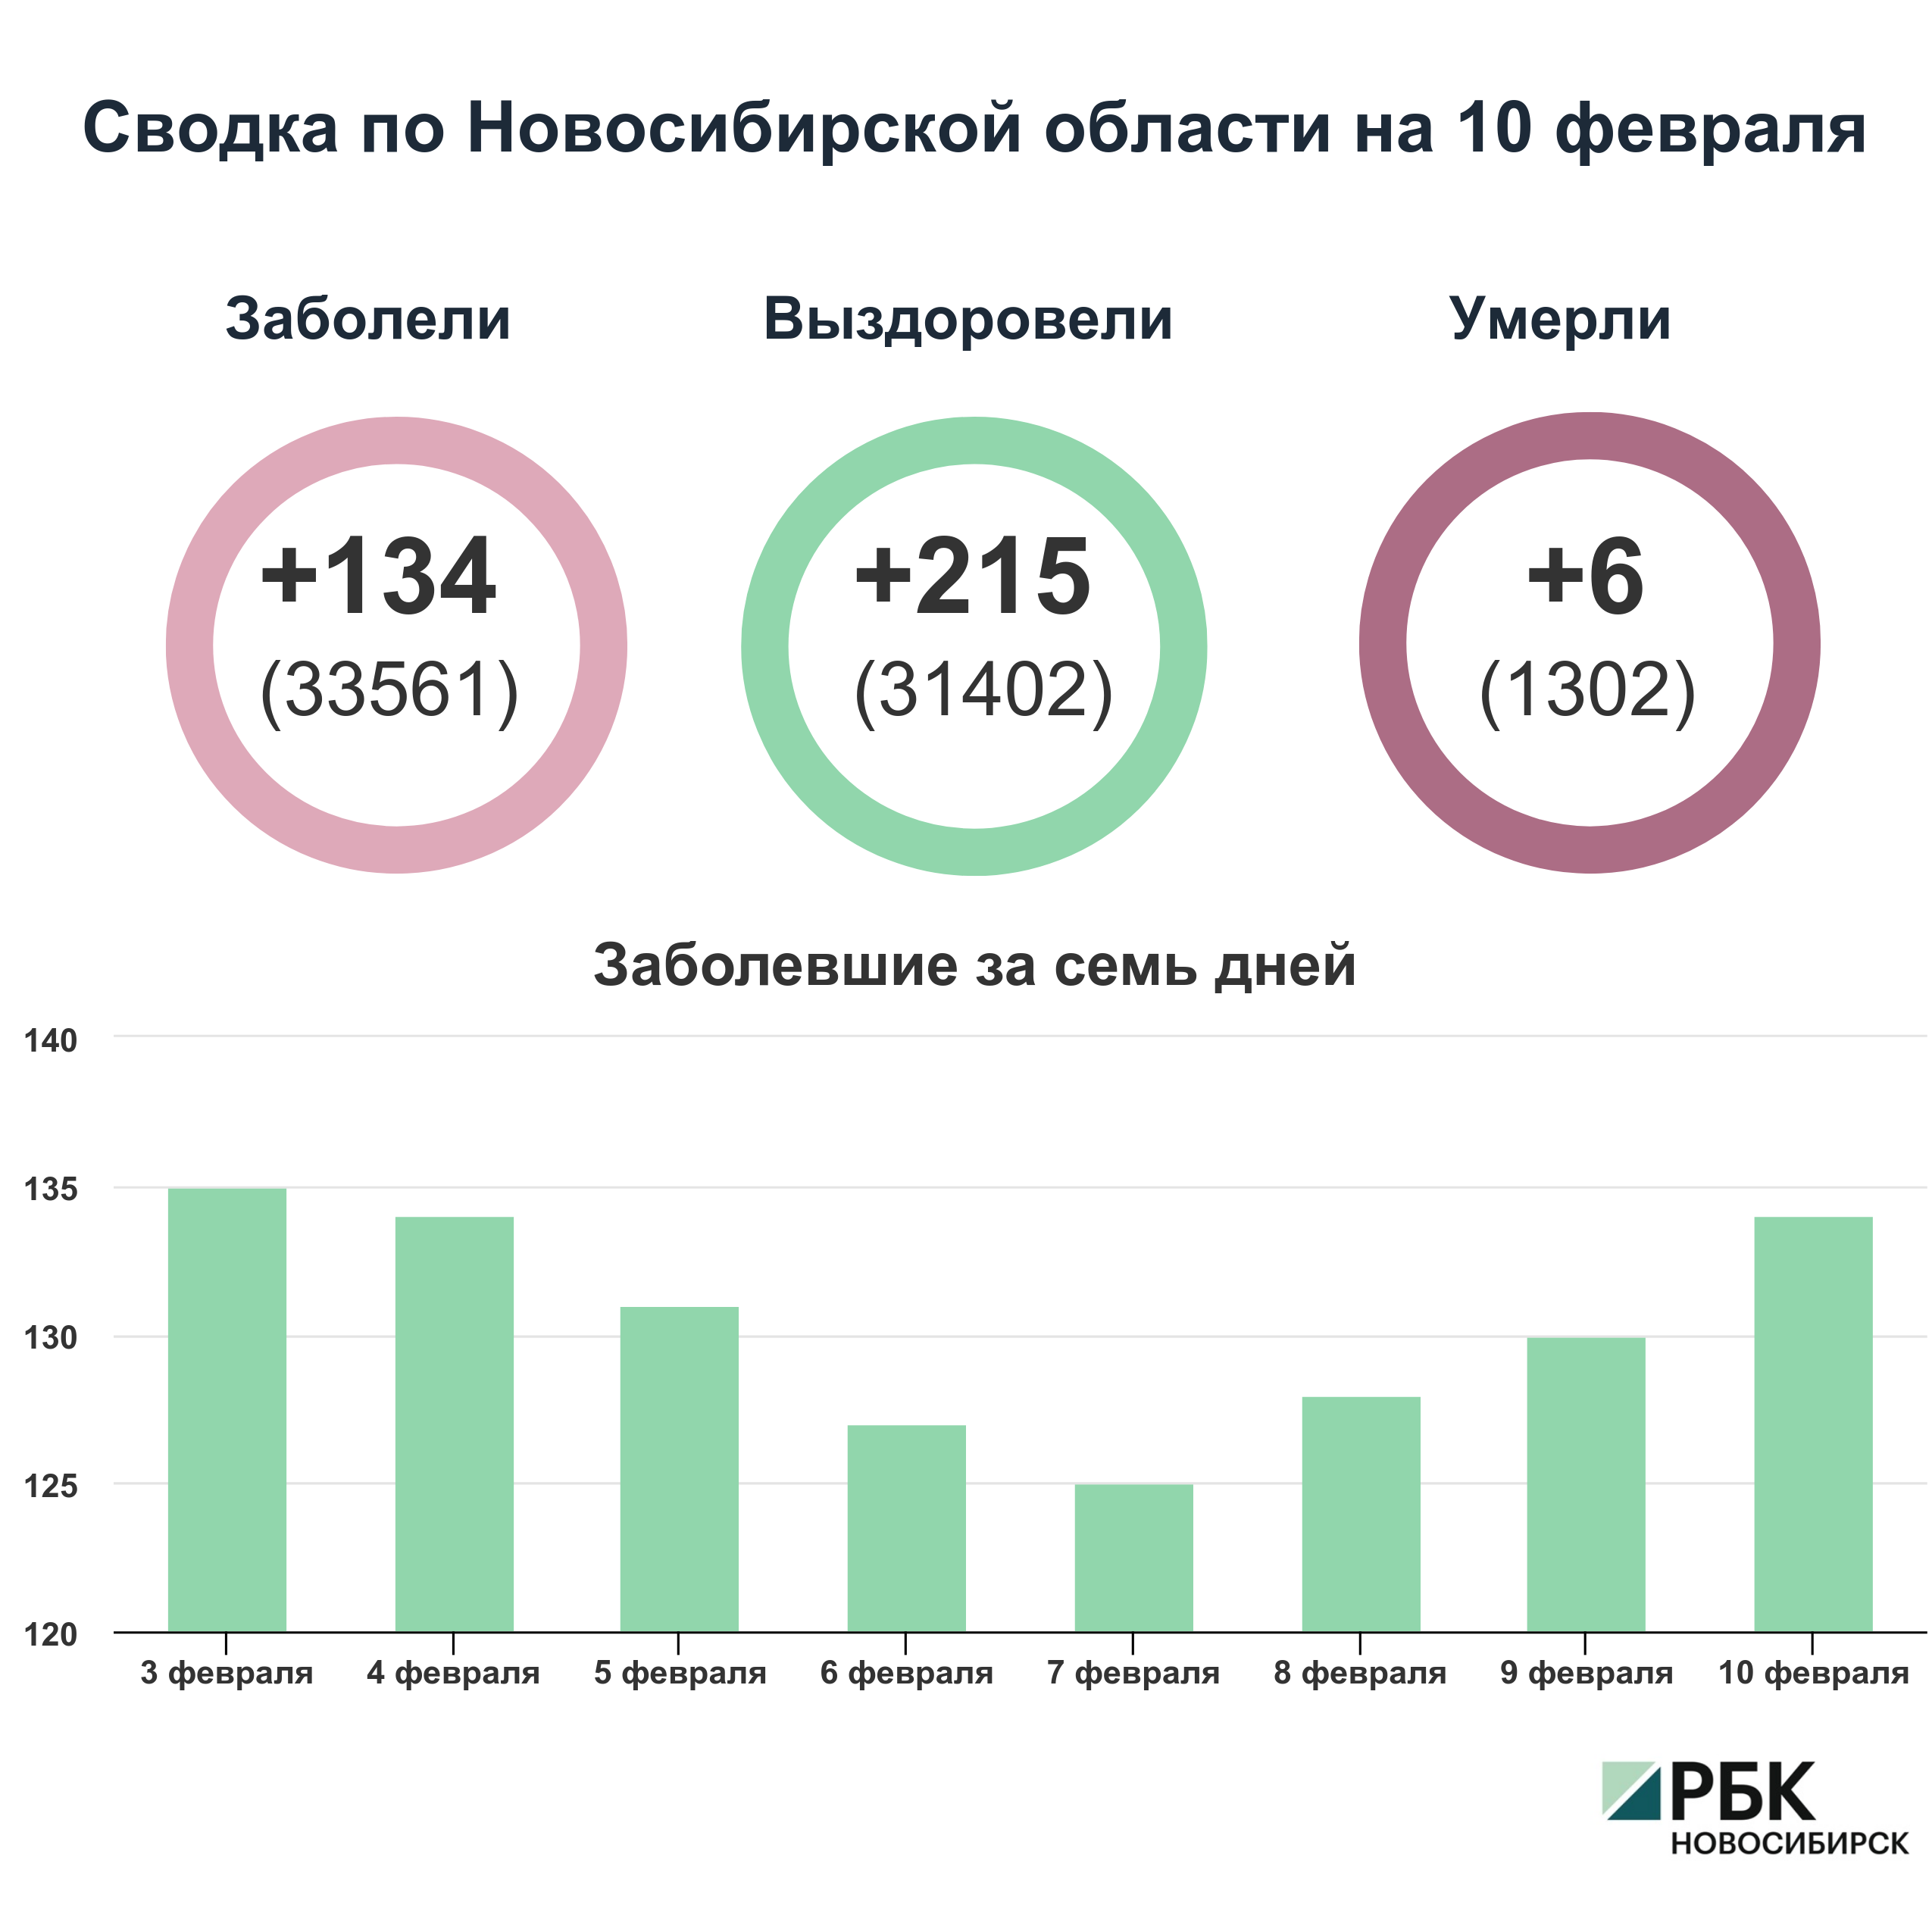 Коронавирус в Новосибирске: сводка на 10 февраля